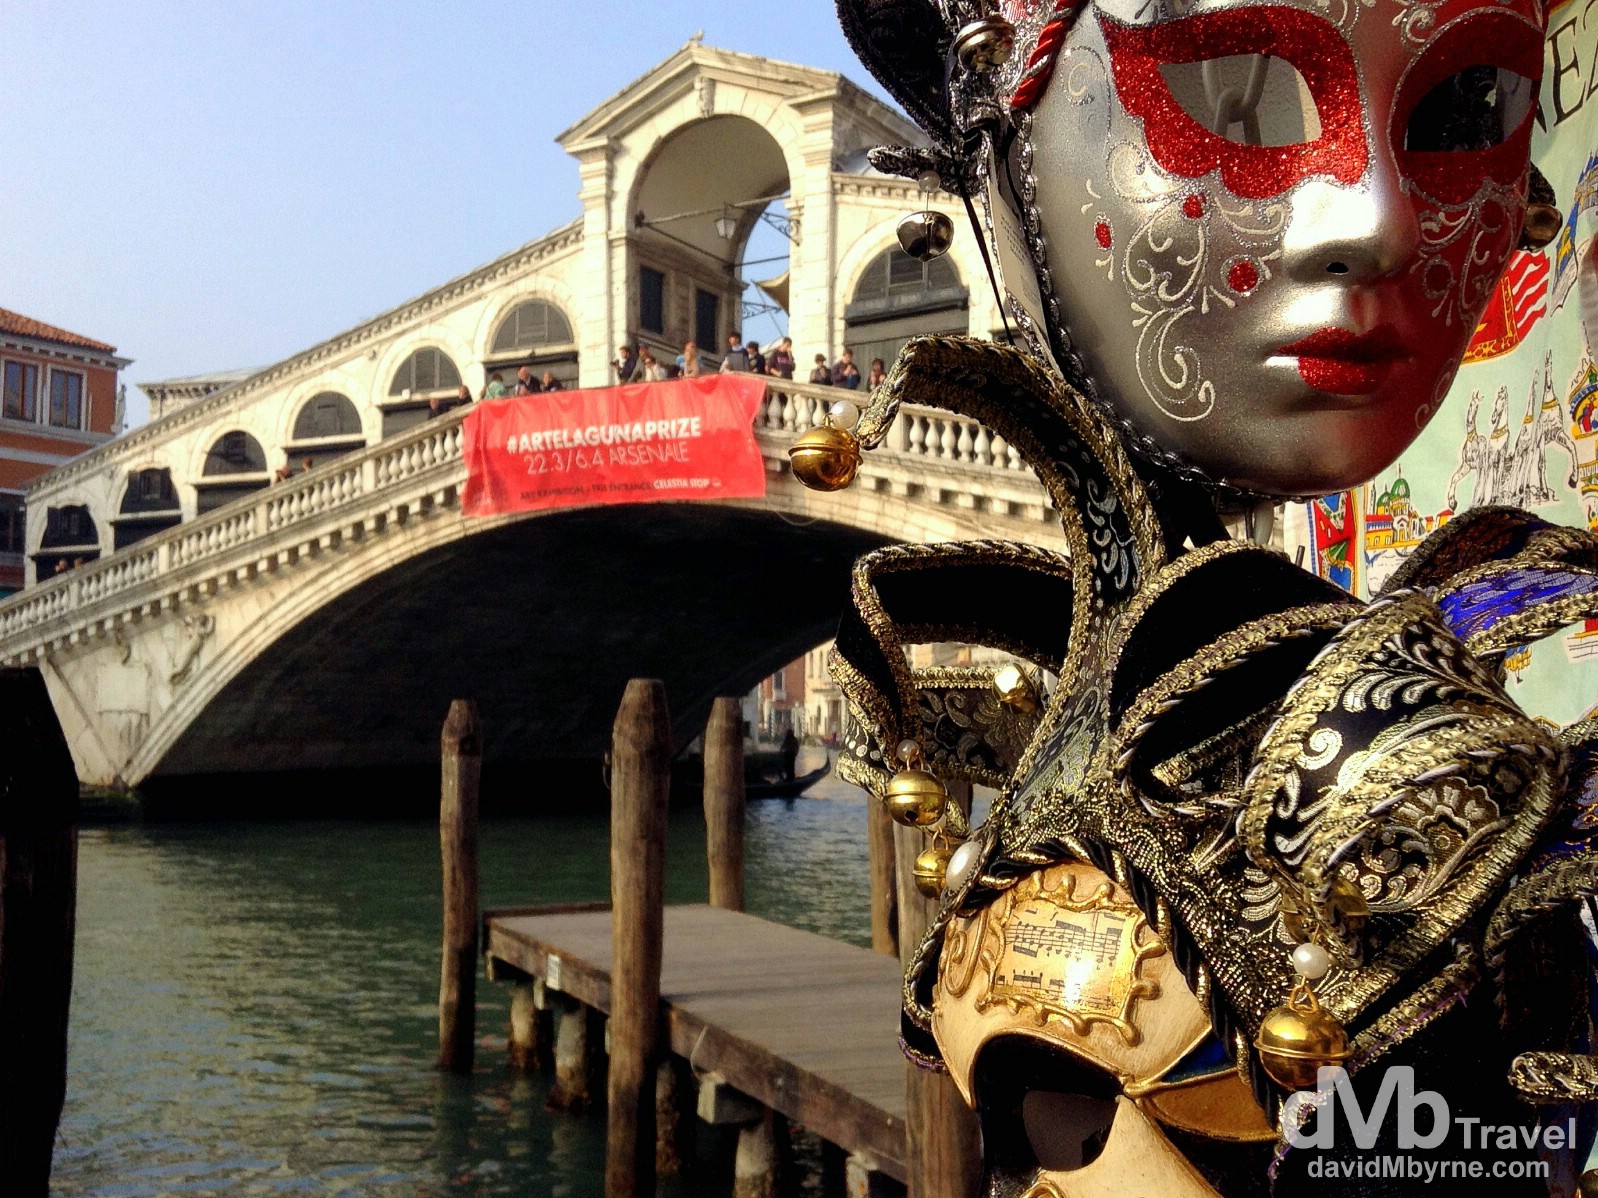 Decorative carnival masks by the Rialto Bridge in Venice, Veneto, Italy. March 19th, 2014.